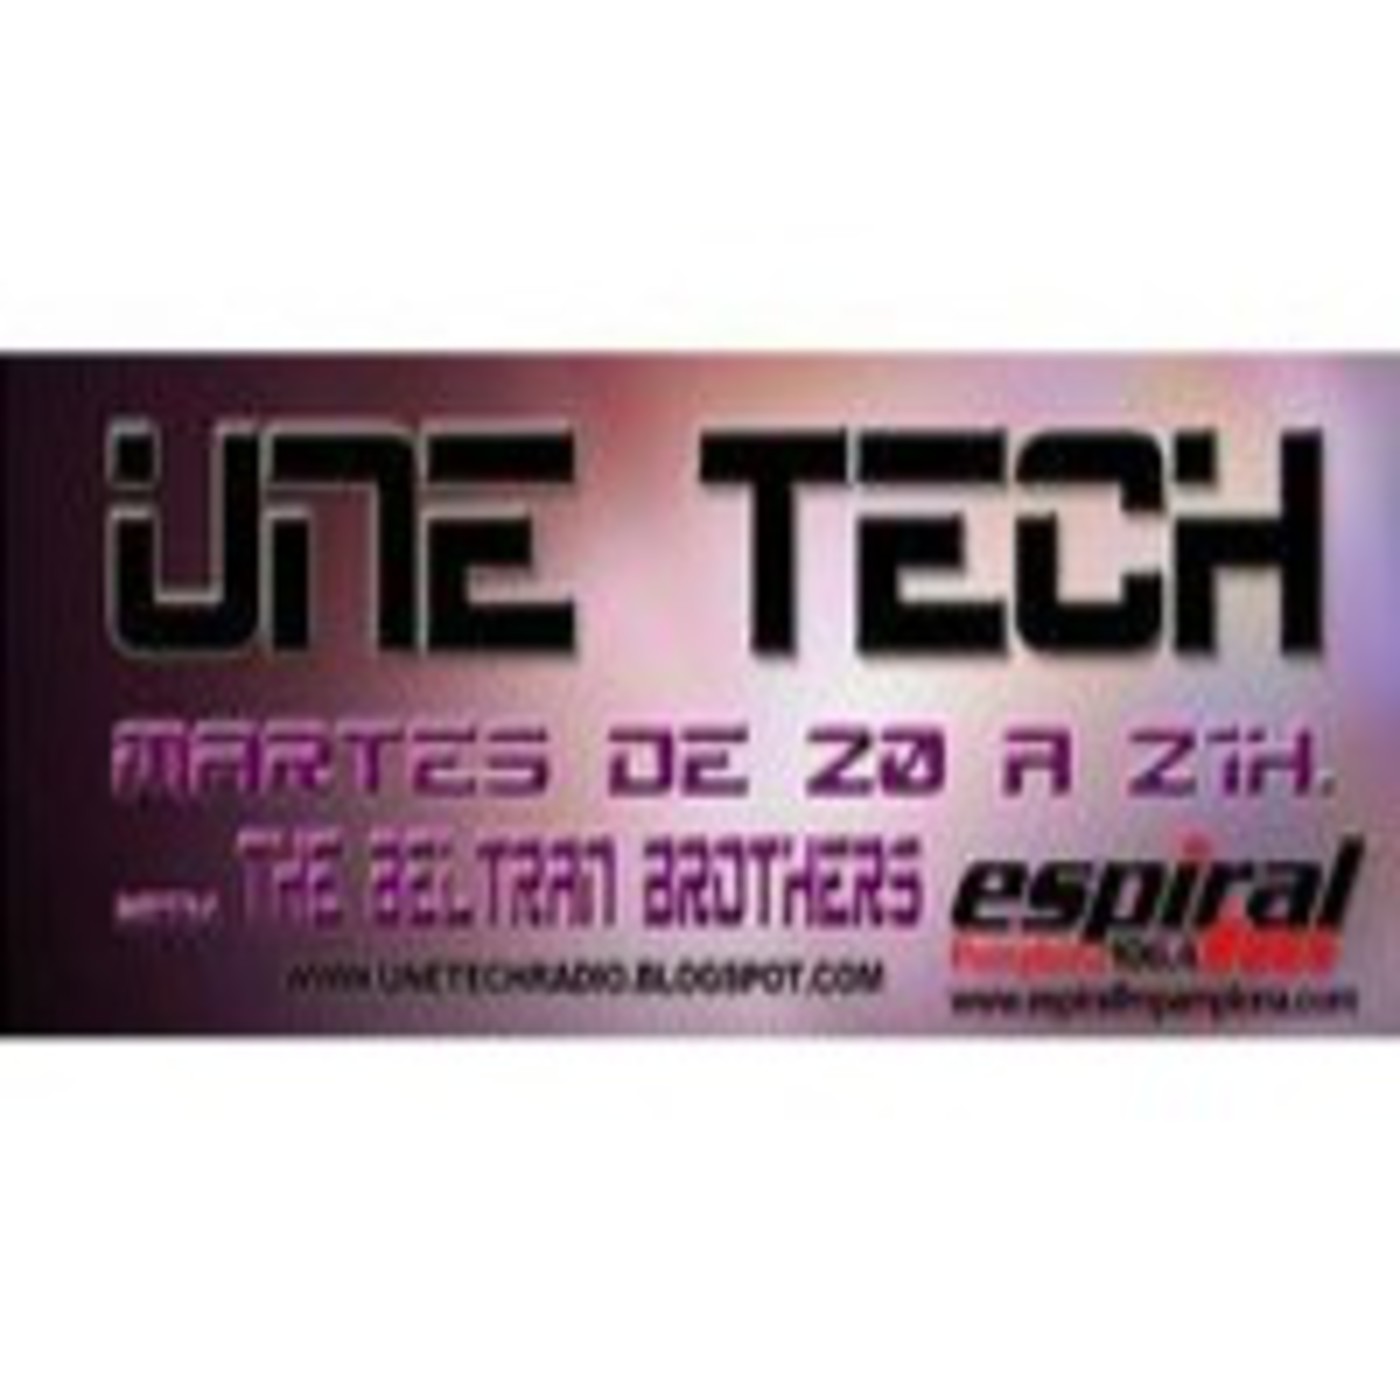 (032) - UneTech - (18-12-2012)